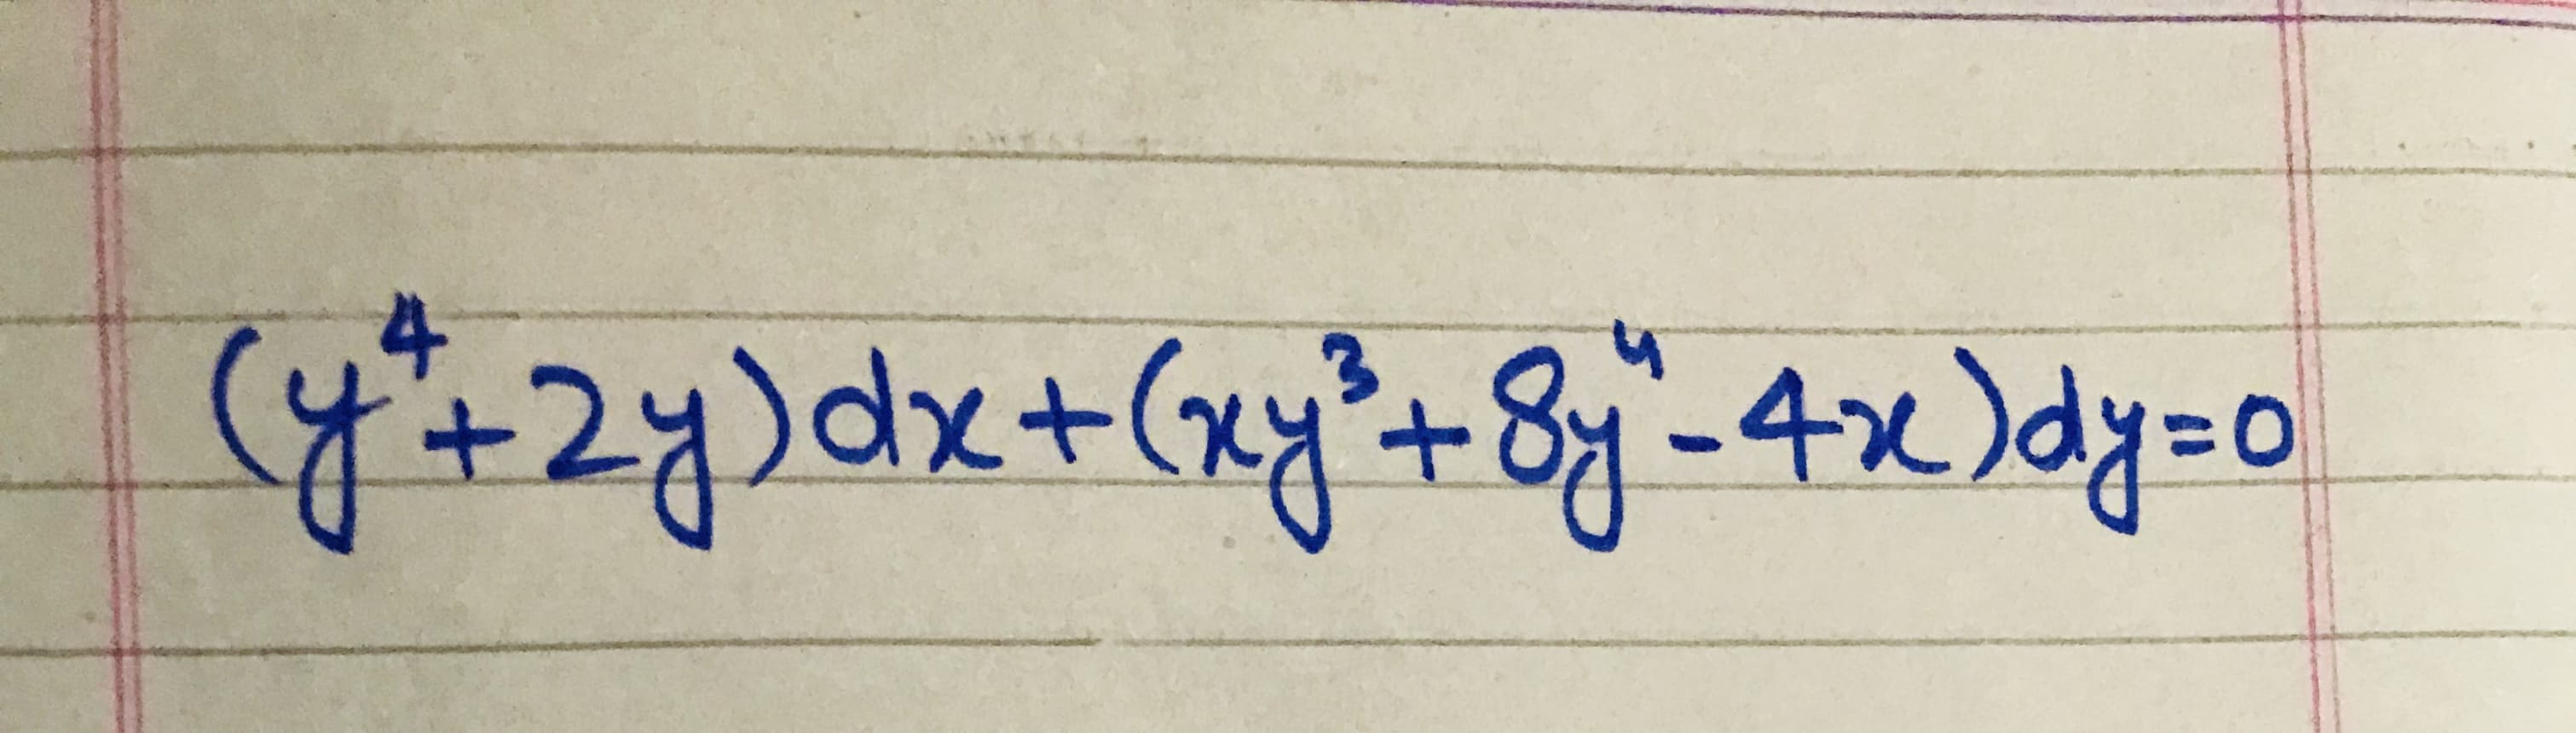 y+2y)dx+(xy²+8j"-4x)dy=0
